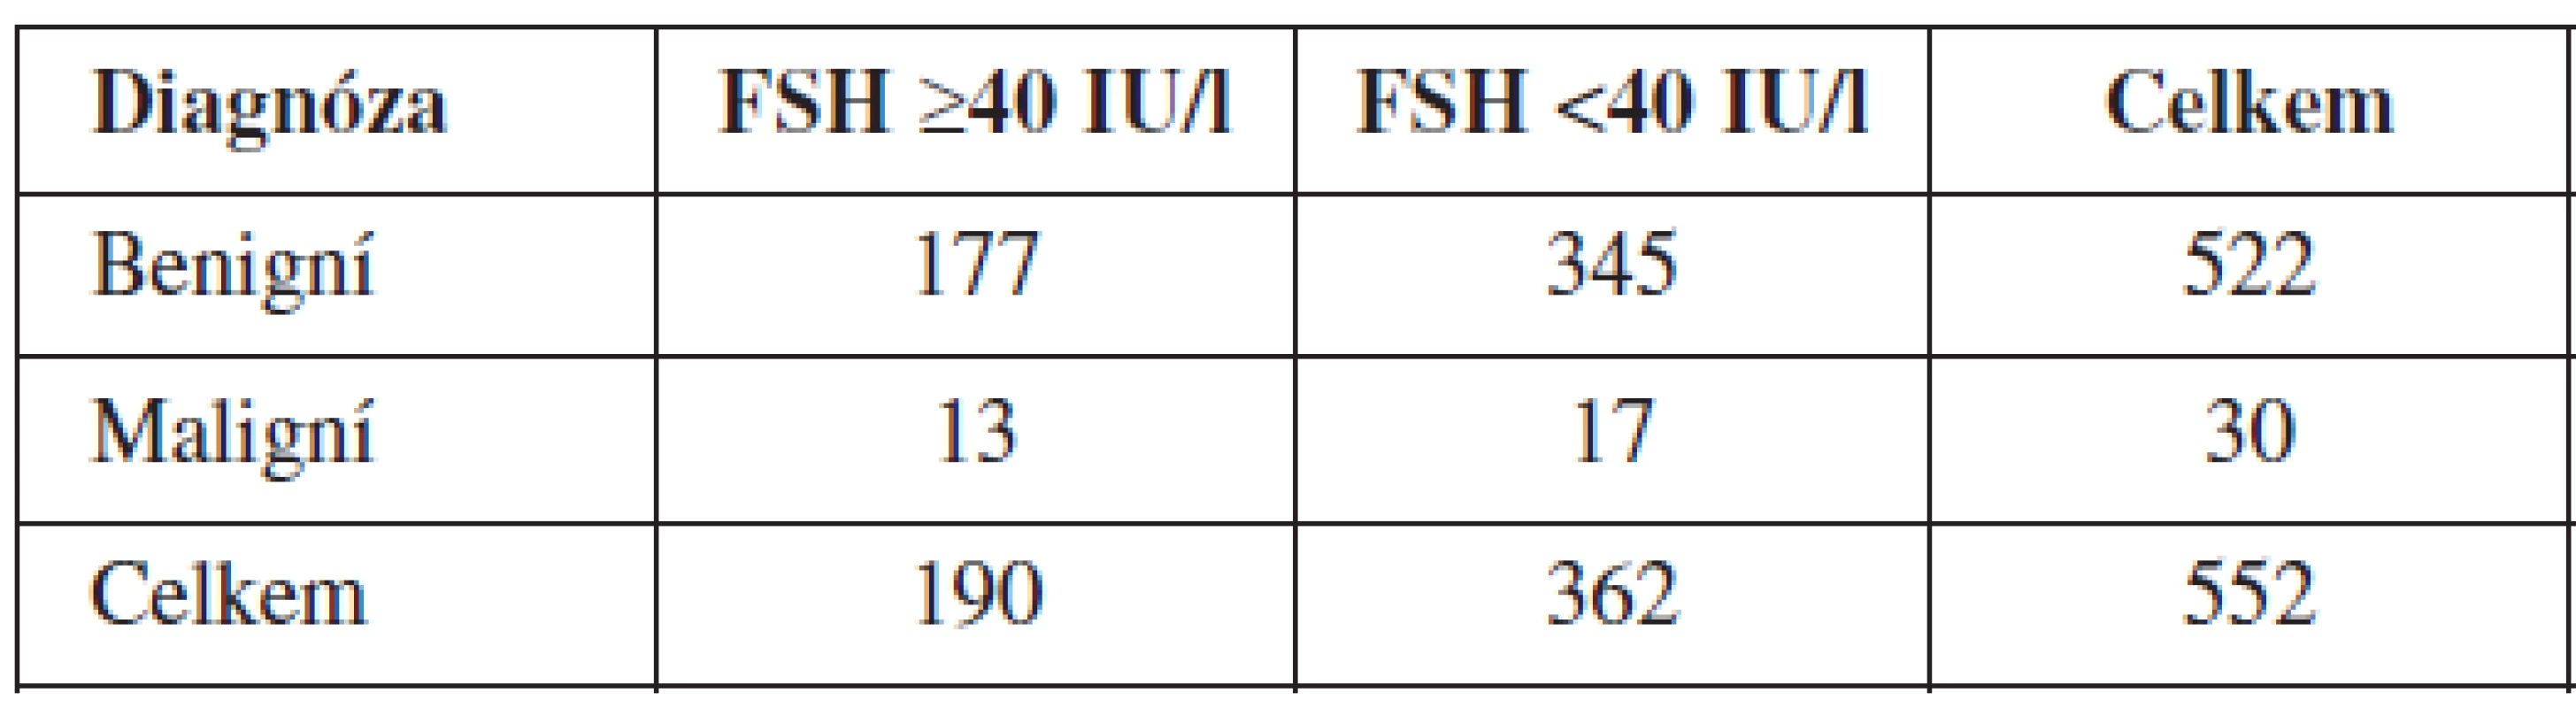 Počet žen ve skupinách po rozdělení podle FSH cut-off 40 IU/l a diagnóz